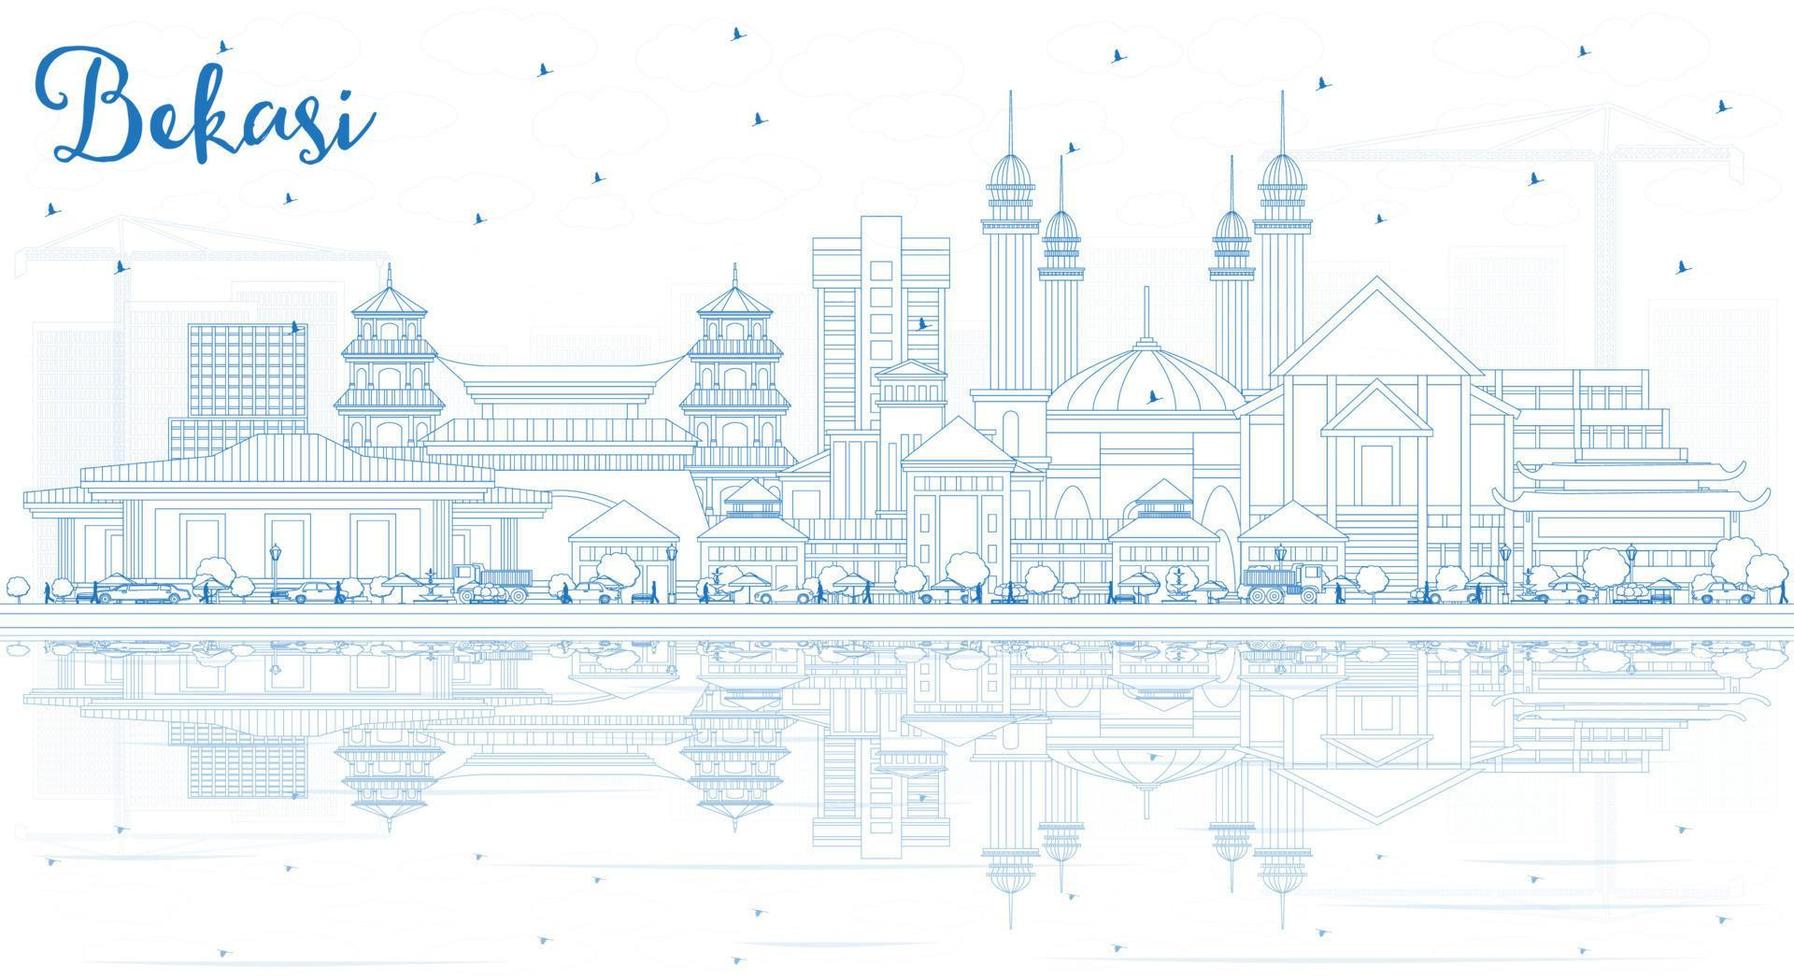 delinear el horizonte de la ciudad de bekasi indonesia con edificios azules y reflejos. vector